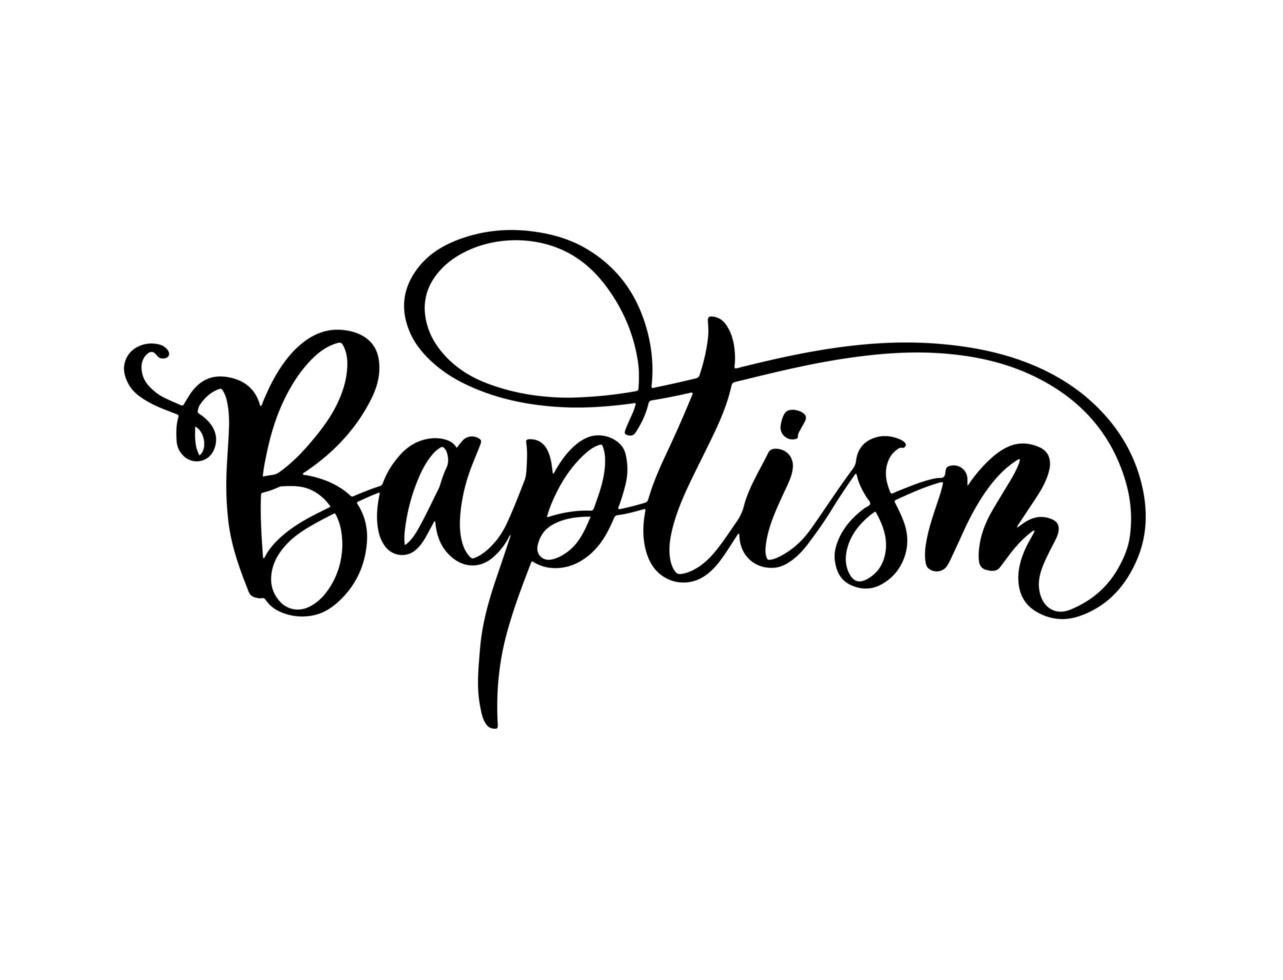 inscrição de letras de mão de batismo para cartão de convite. vetor